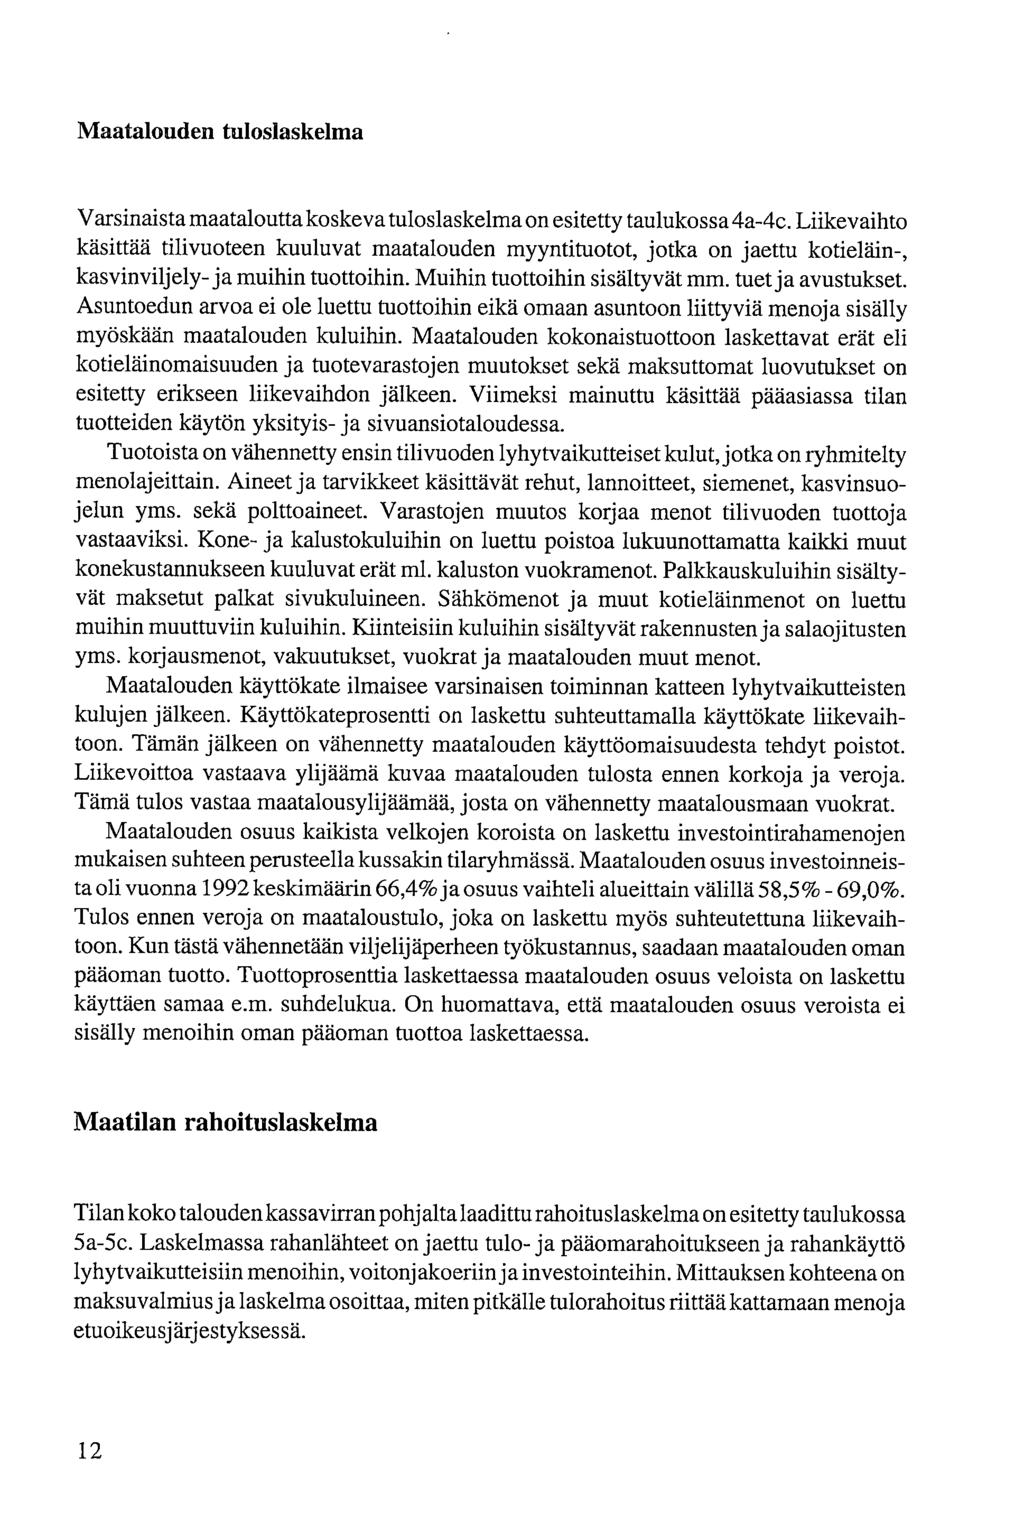 Maataloud tuloslaskelma Varsinaista maataloutta koskeva tuloslaskelma on esitetty taulukossa 4a-4c.